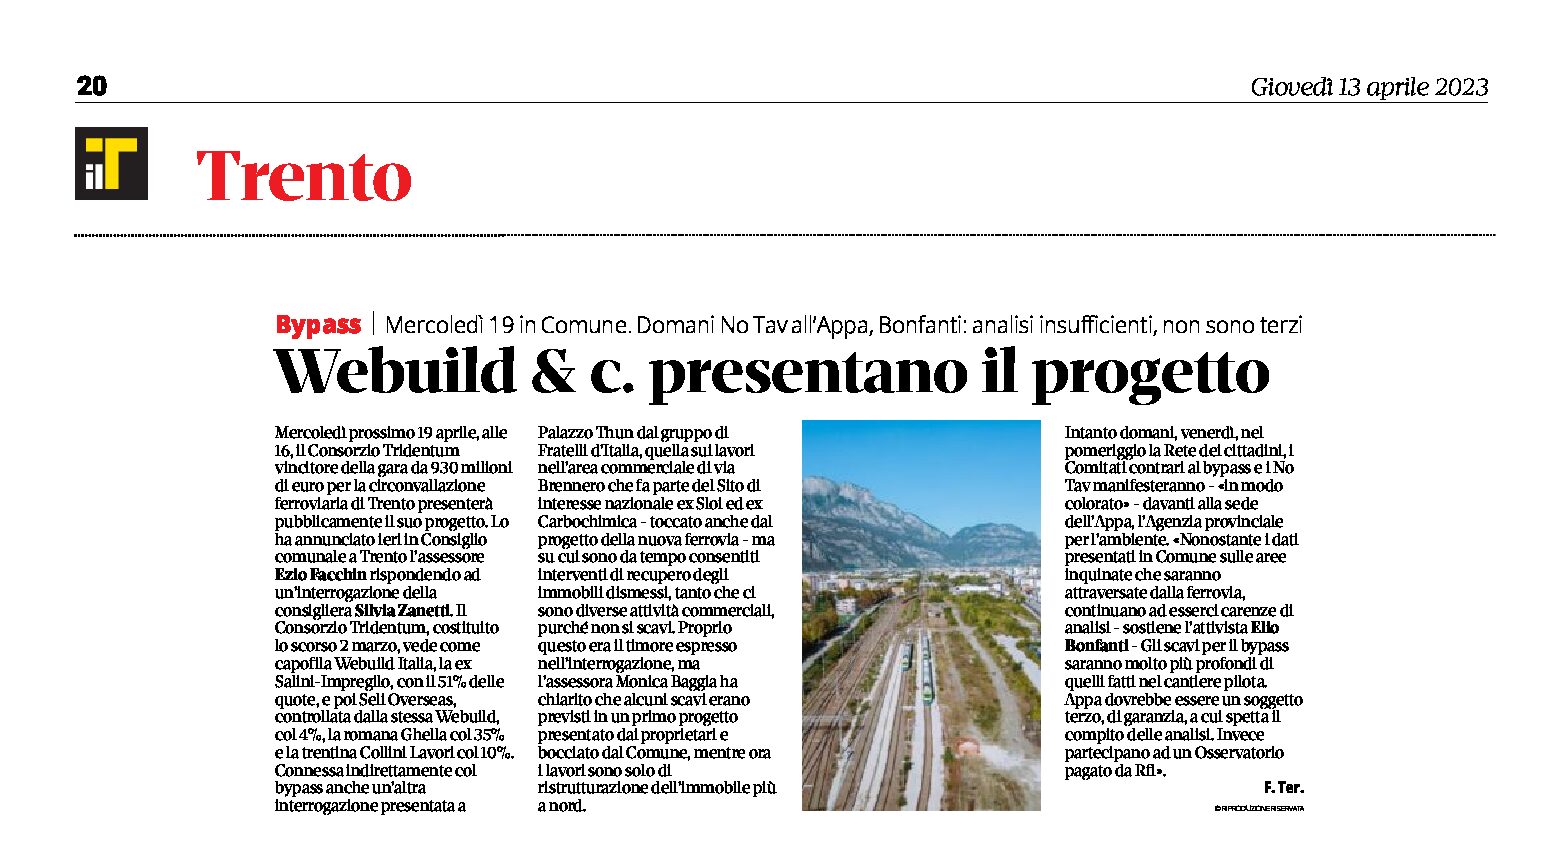 Trento, bypass: Webuild & c. presentano il progetto